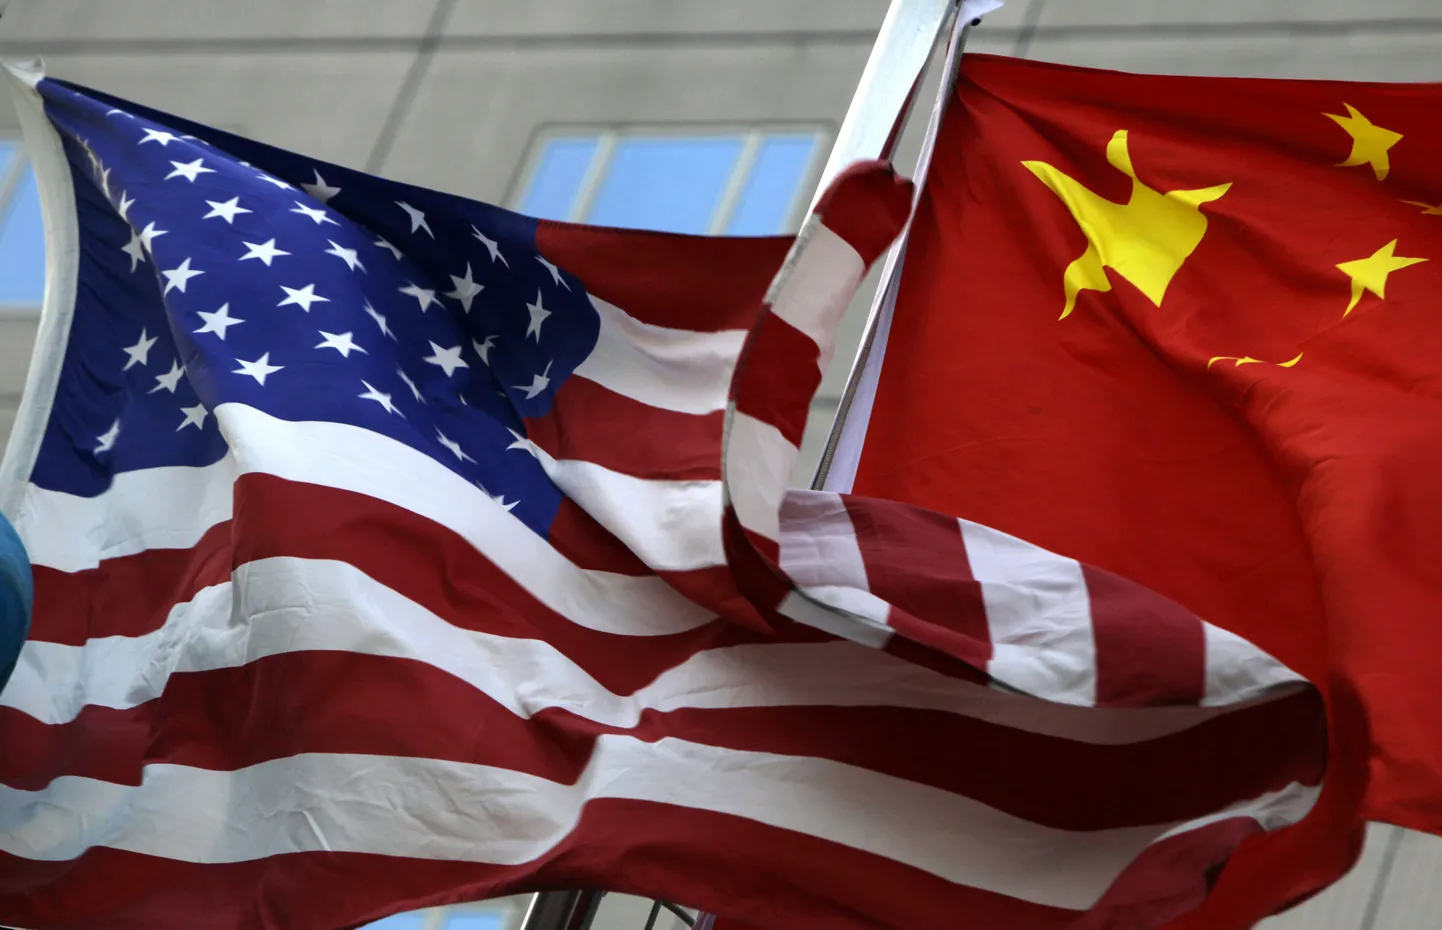 Hiina Rahvavabariigi ja Ameerika Ühendriikide suhted on muutunud üha teravamaks.